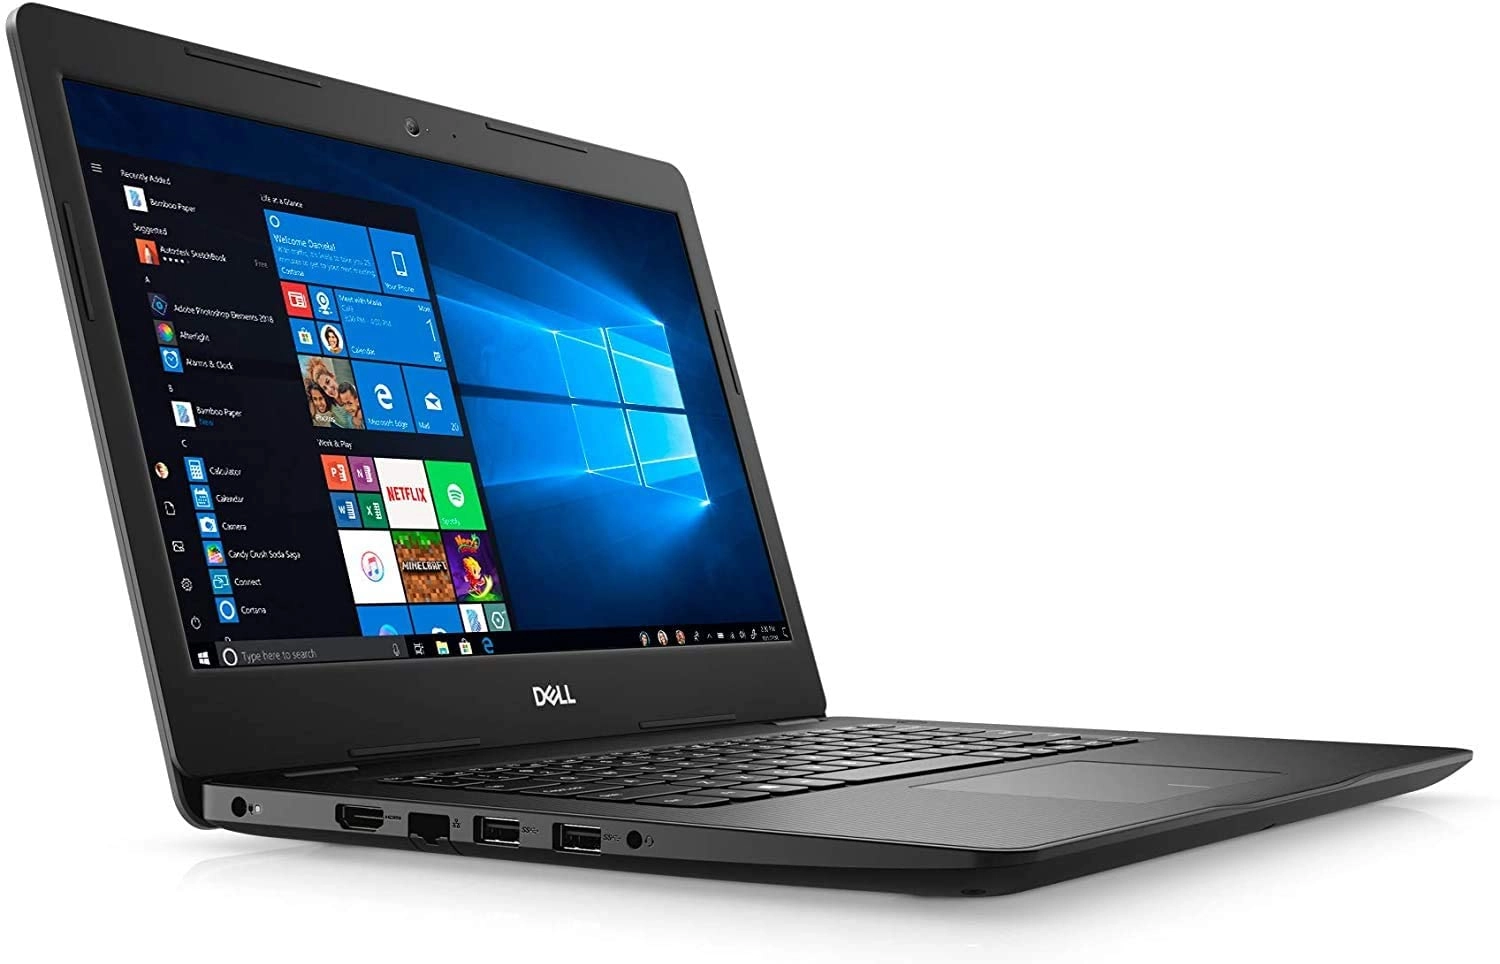 Dell D15 laptop image